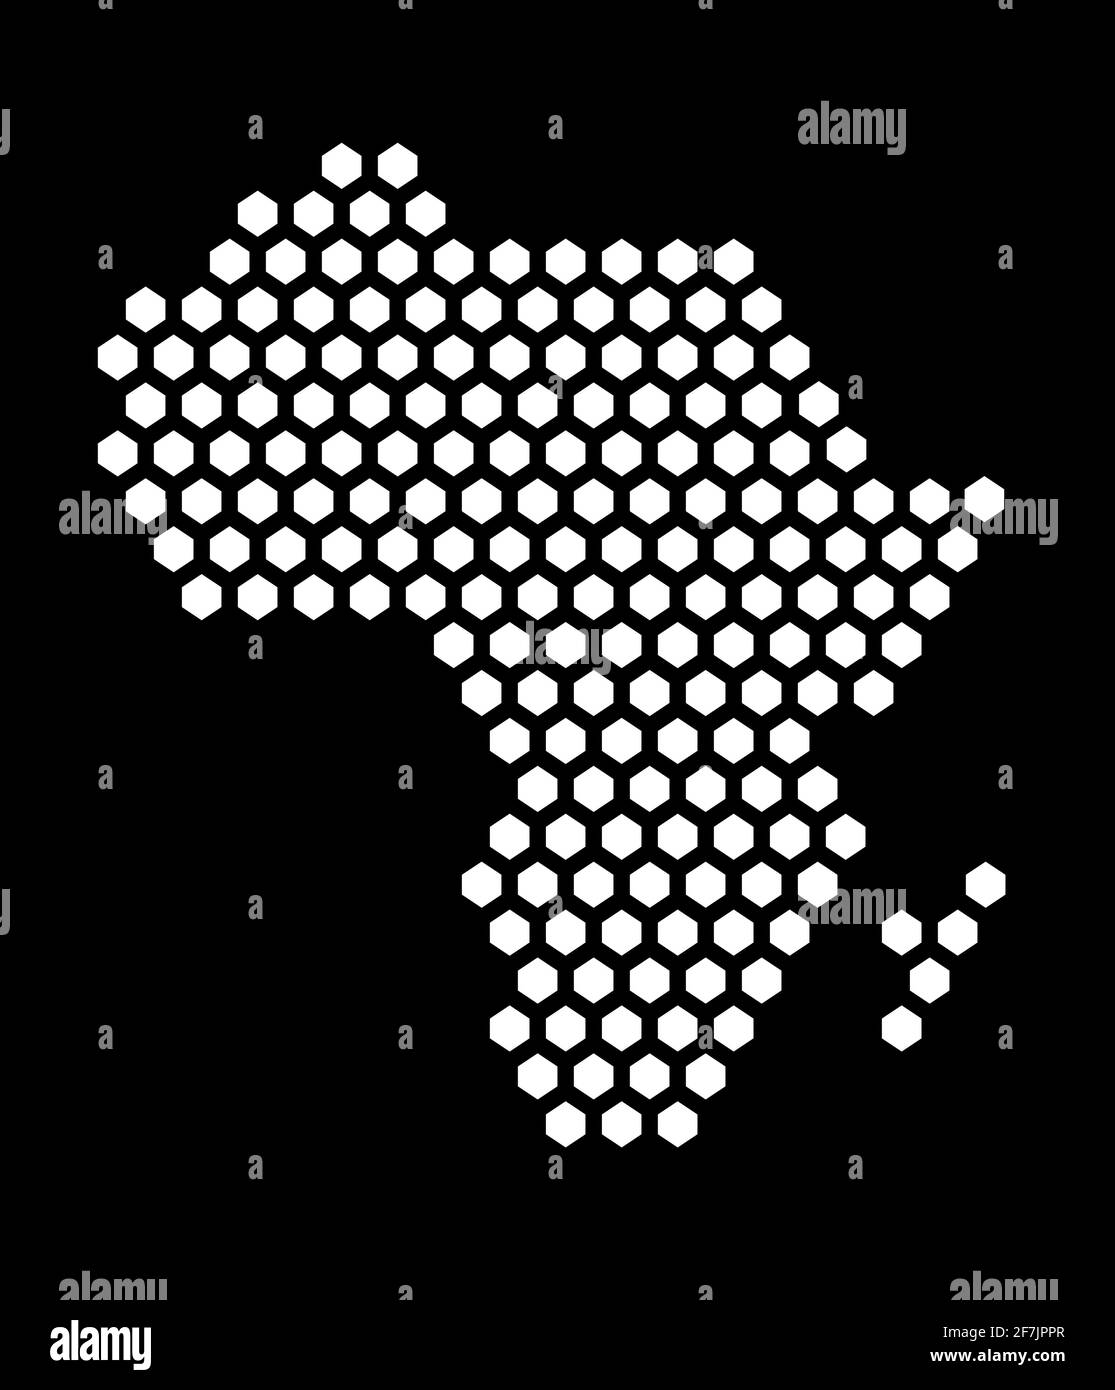 Carte de pixels hexagonaux noir et blanc de l'Afrique. Illustration vectorielle continent africain carte hexagonale mosaïque en pointillés. Frontière administrative, territoire compositio Illustration de Vecteur